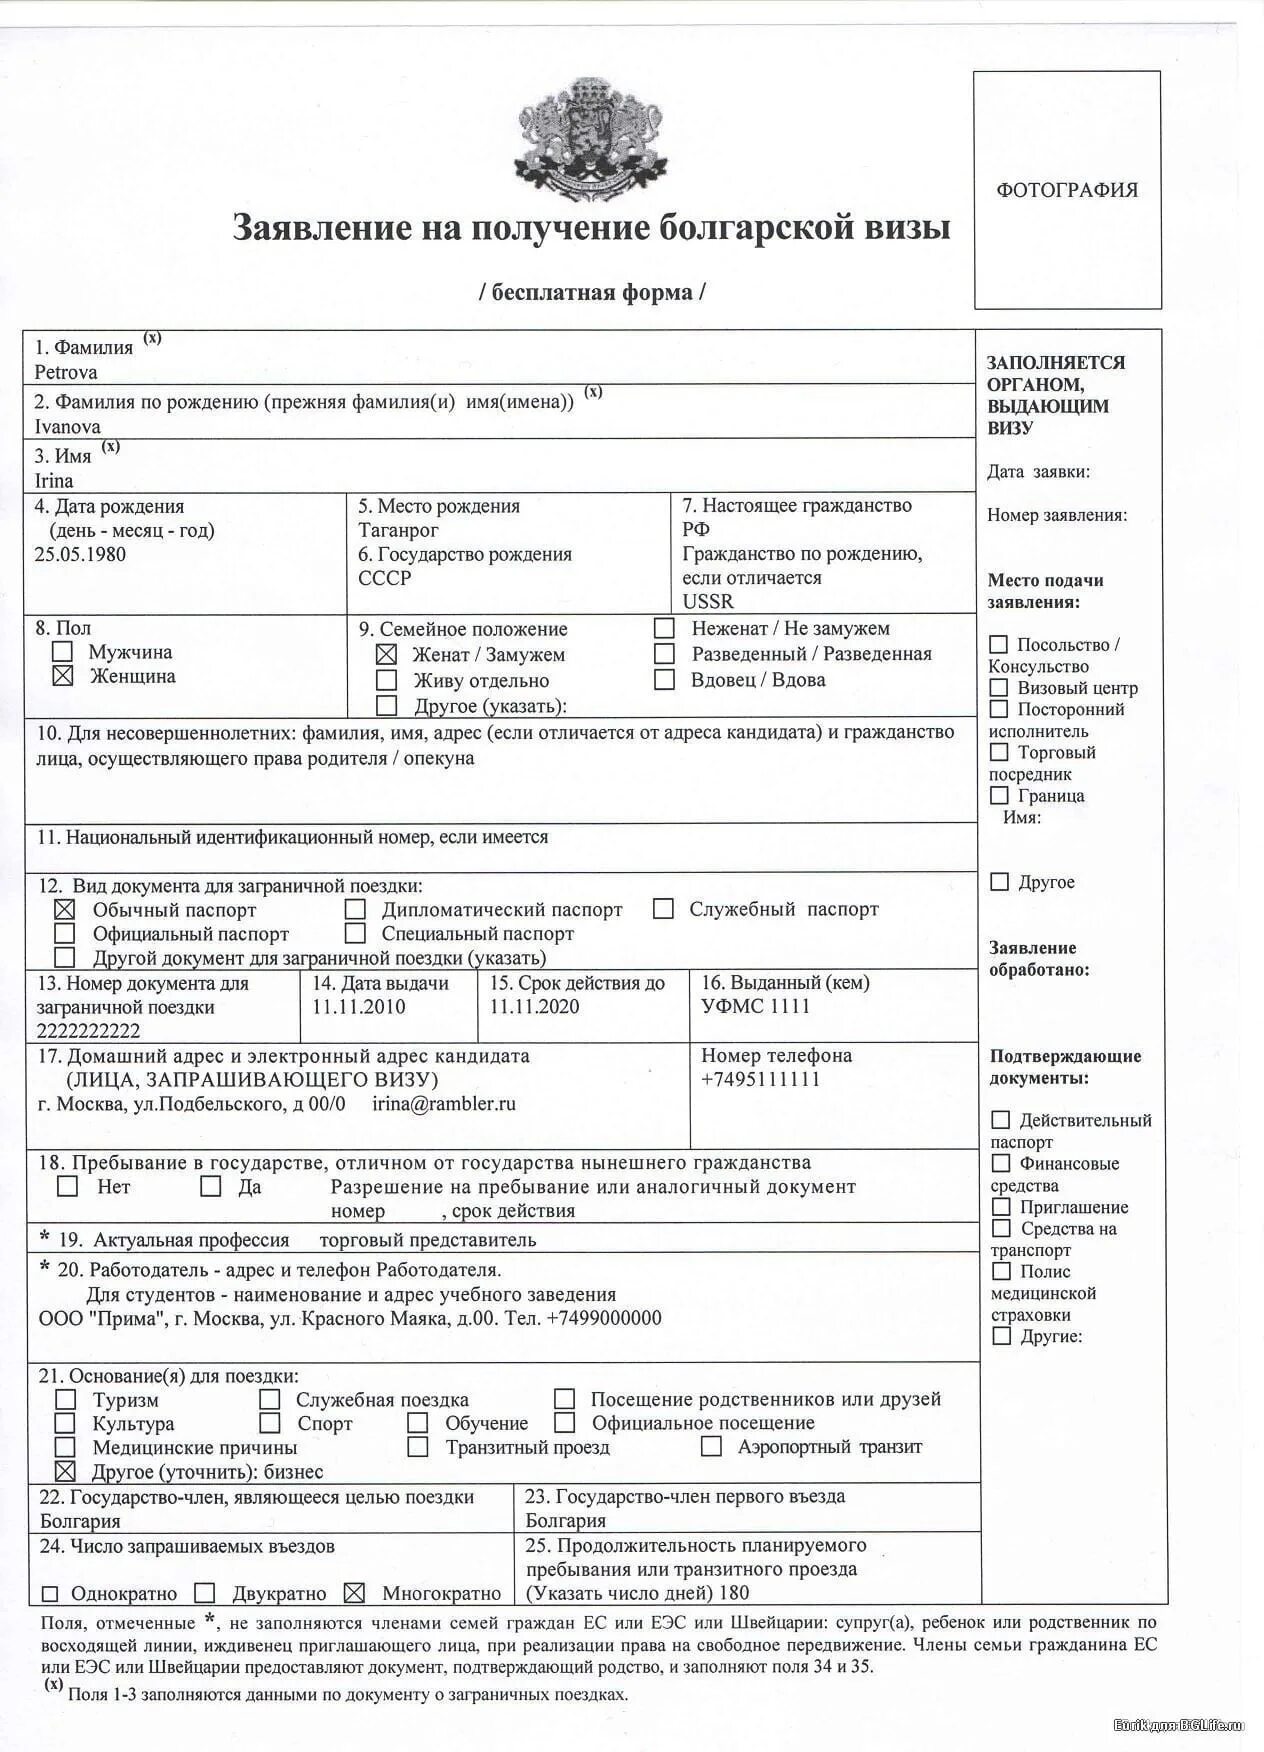 Какие нужно документы на подачу визы. Анкета на визу д в Болгарию образец заполнения. Как заполнить анкету на визу в Болгарию образец заполнения. Образец заполнения визы в Болгарию 2020. Образец заполнения анкеты на визу д в Болгарию для пенсионеров.